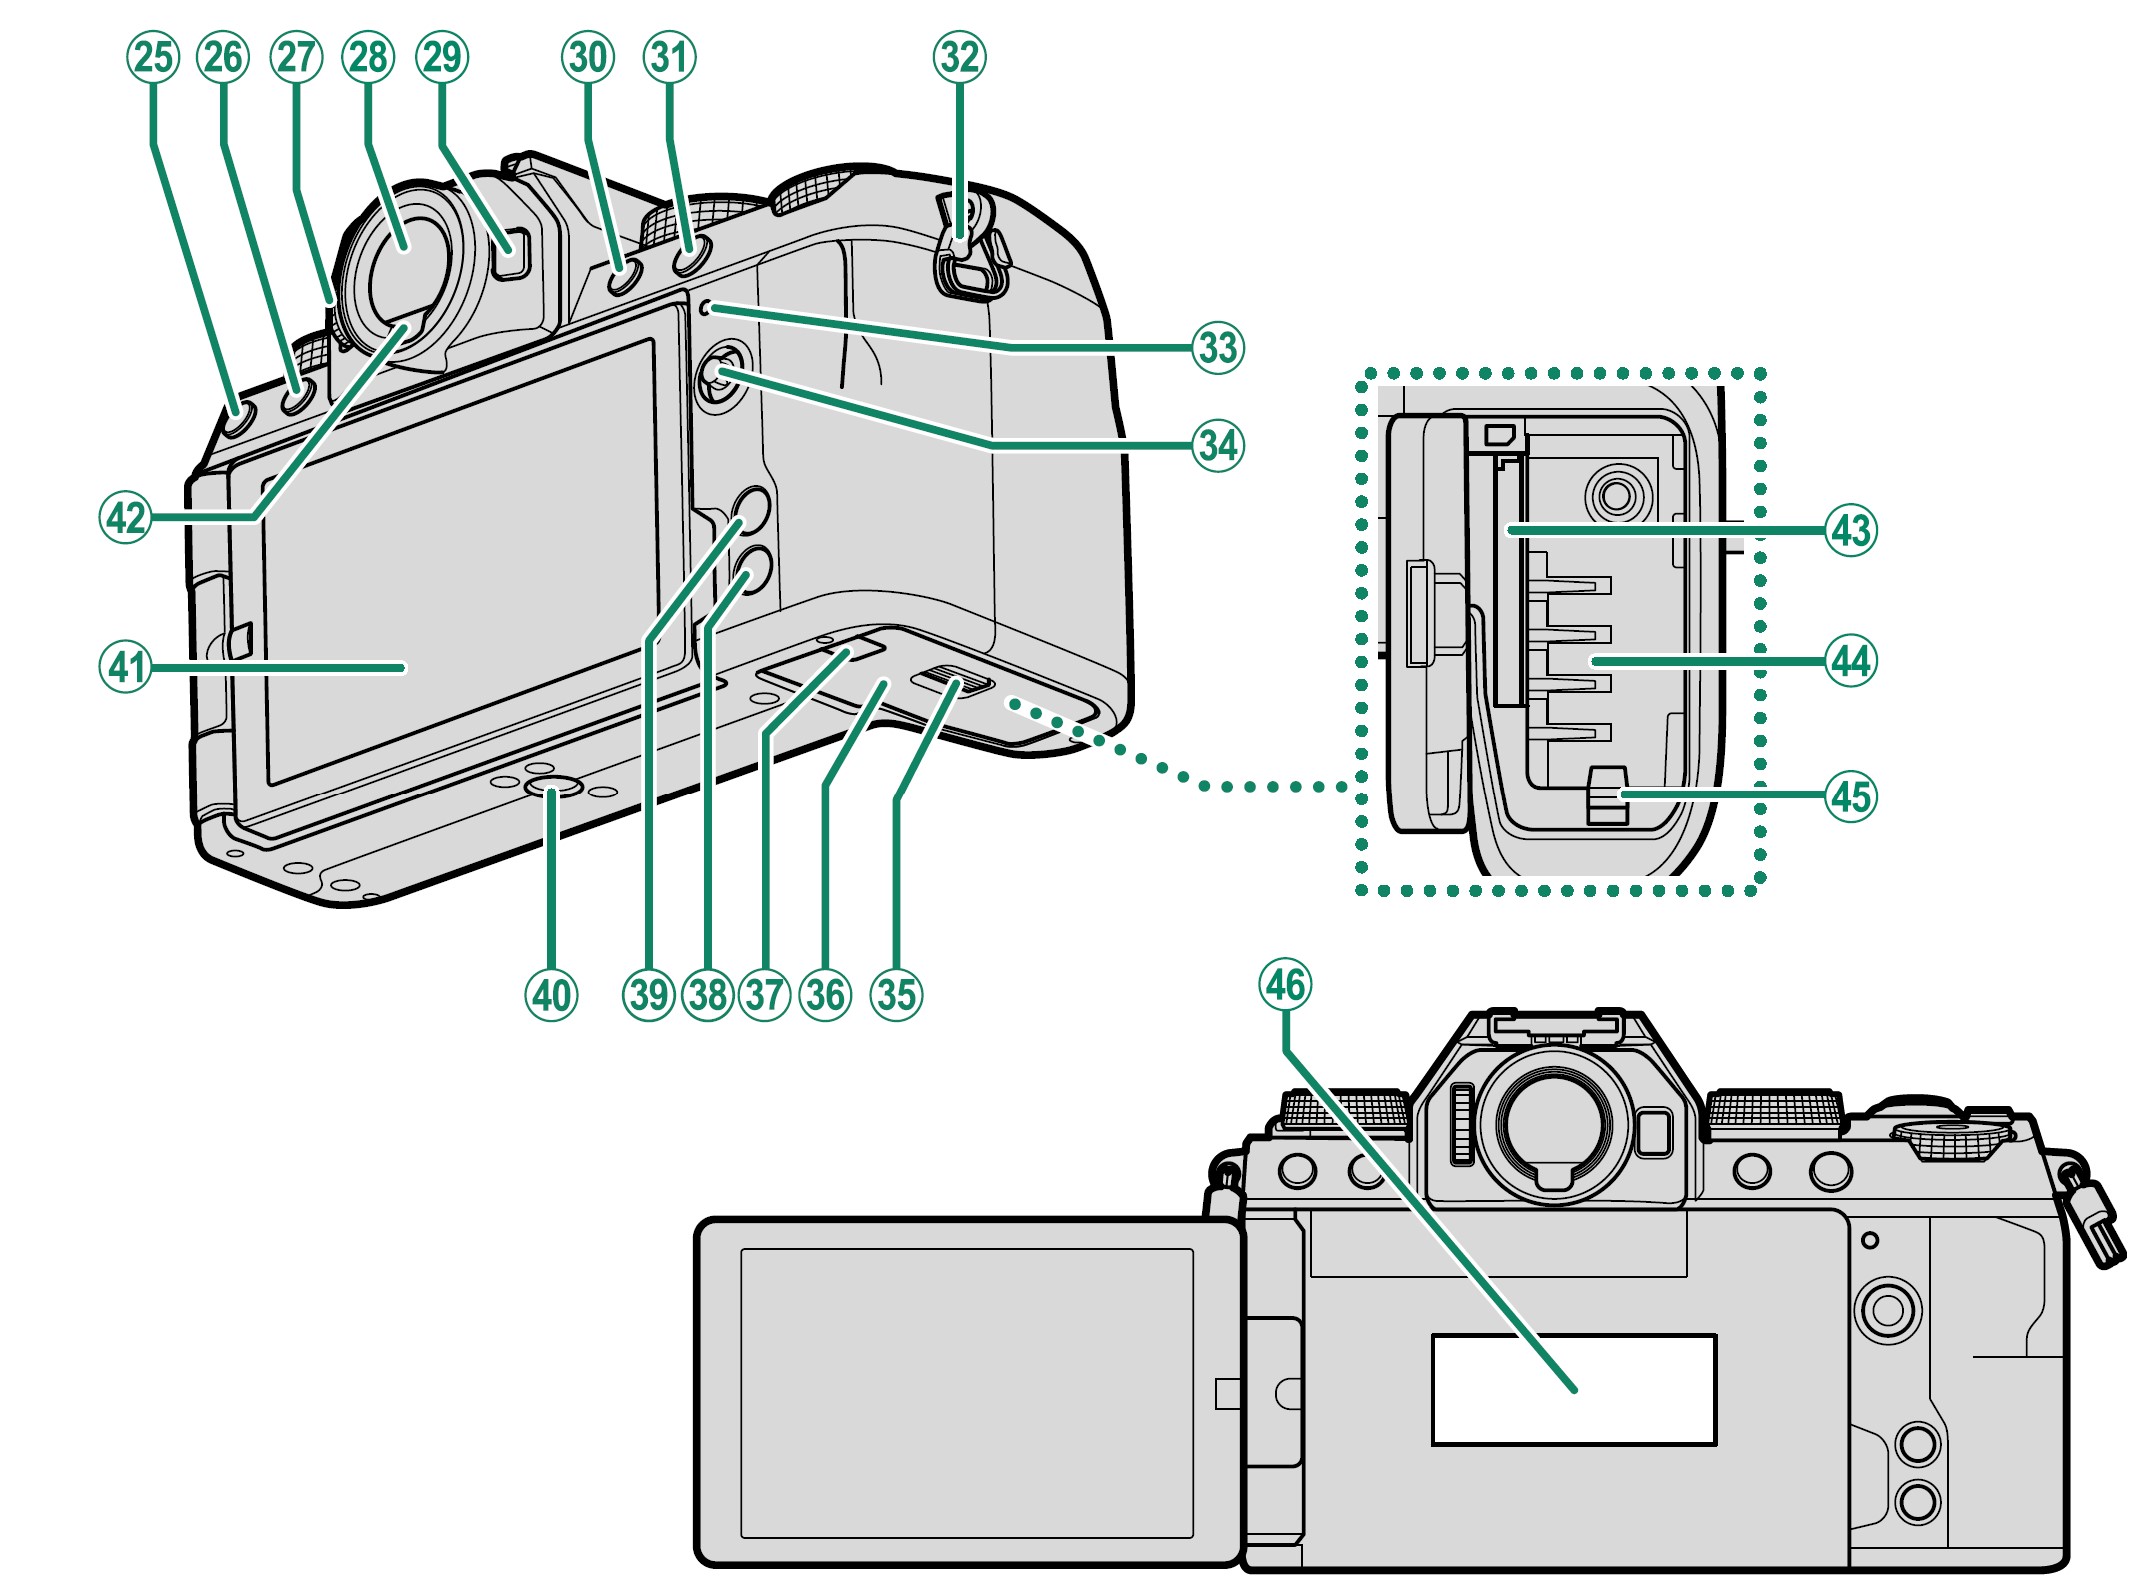 Fujifilm-X-S10-Mirrorless-Digital-Camera-Owner-Manual-4